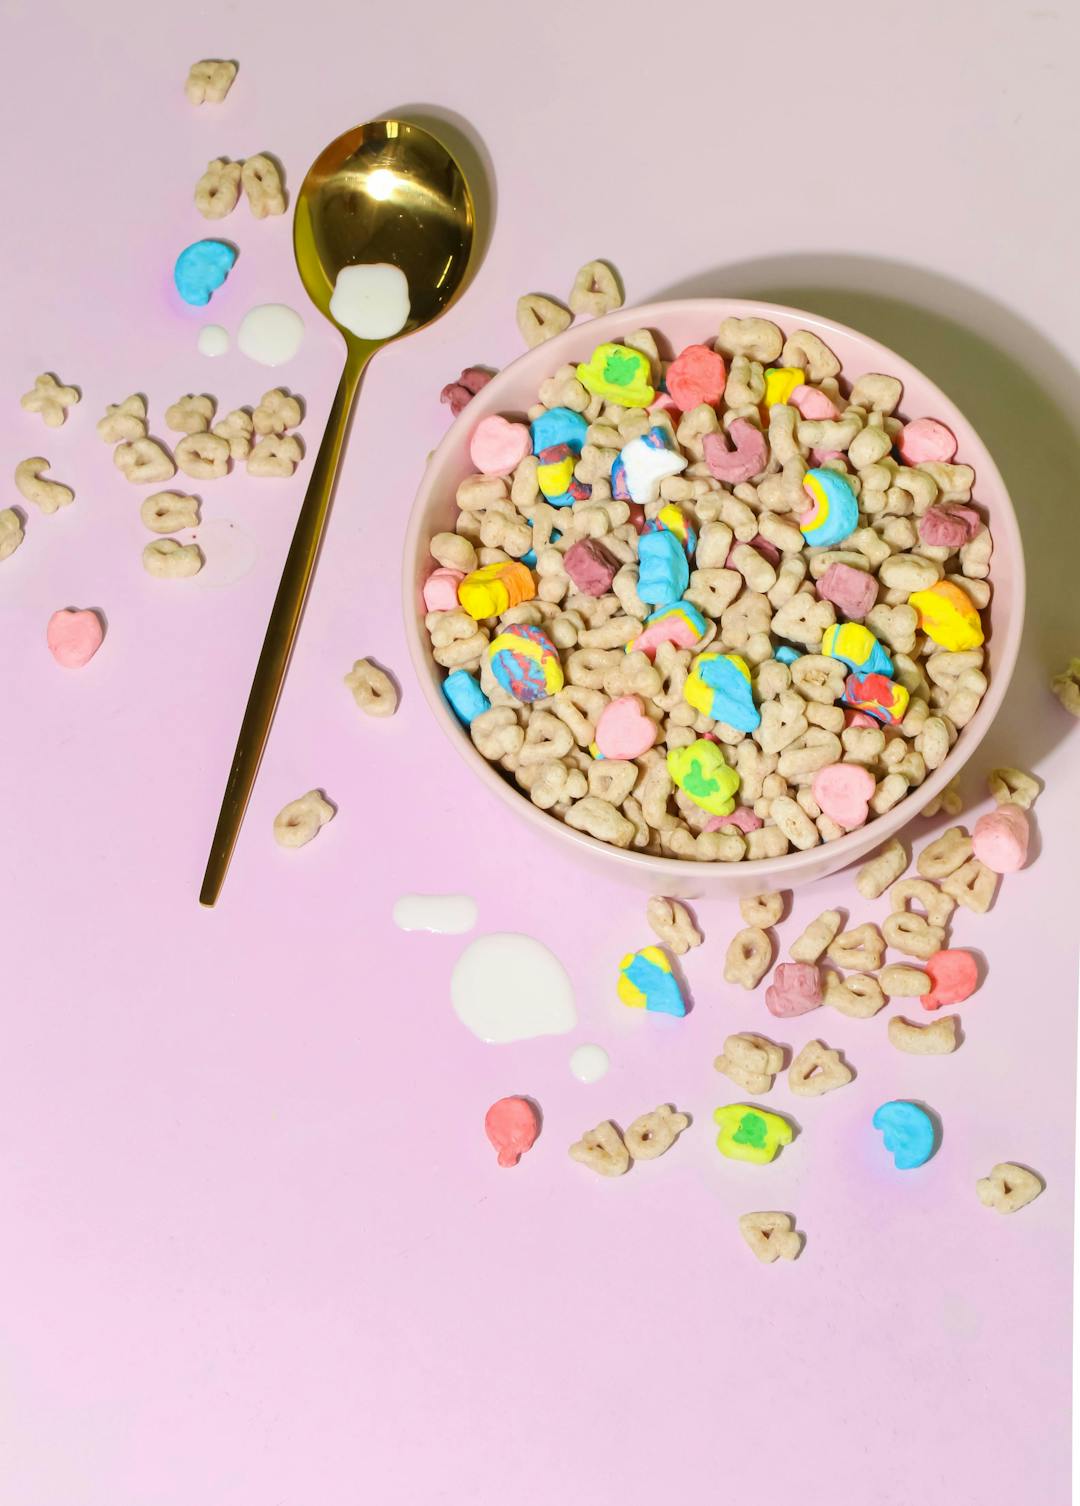 Cover Image for breakfast bliss: cereal milk strain spotlight